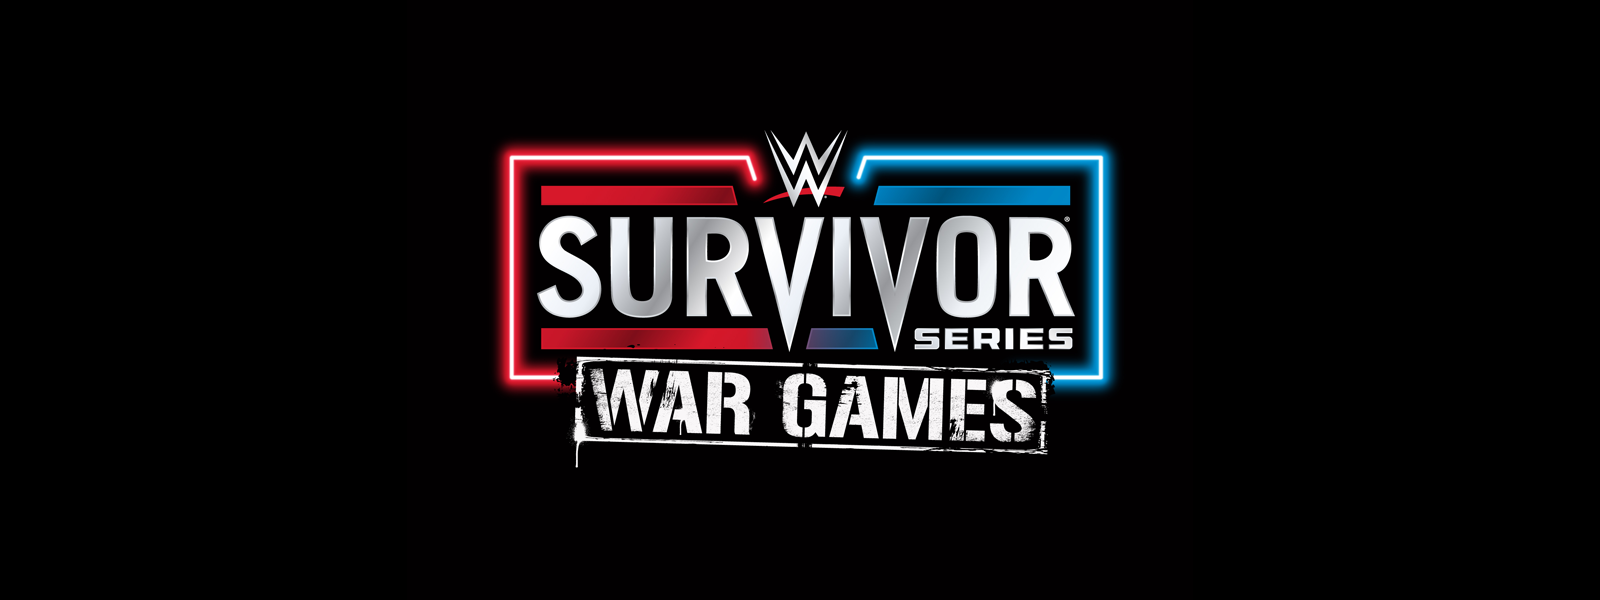 WWE Survivor Series WarGames TD Garden